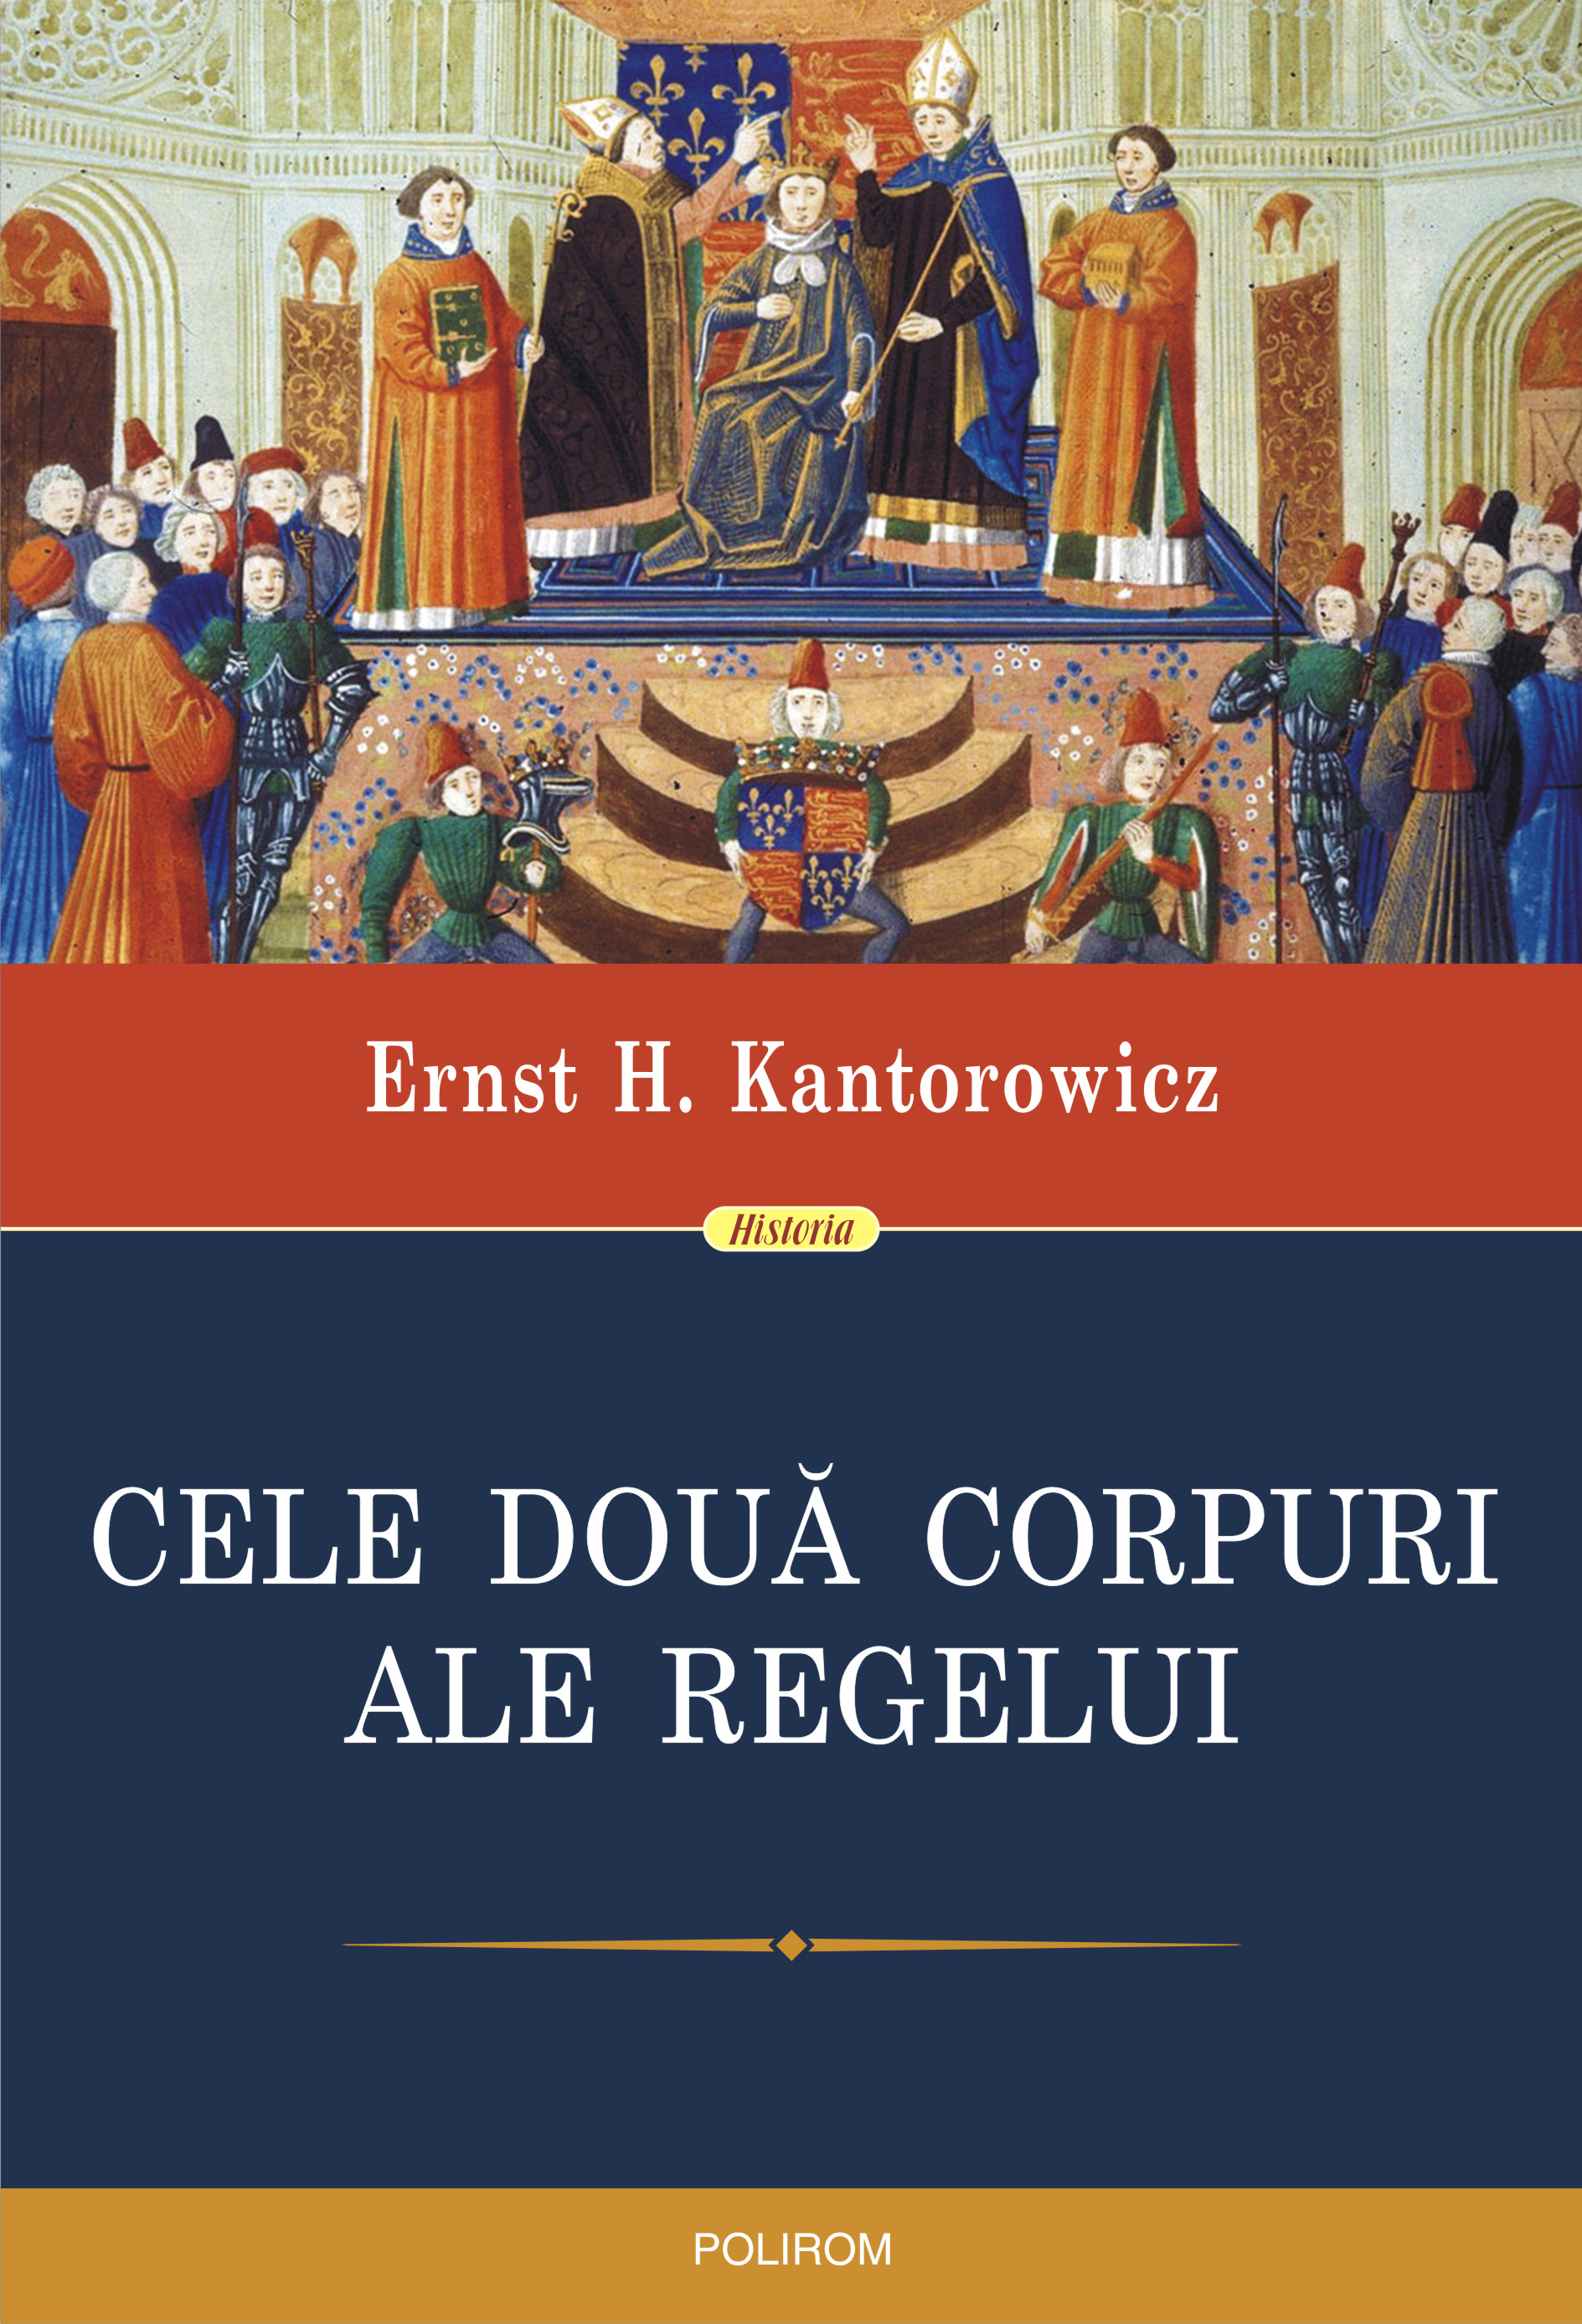 eBook Cele doua corpuri ale regelui. Un studiu asupra teologiei politice medievale - Ernst H. Kantorowicz